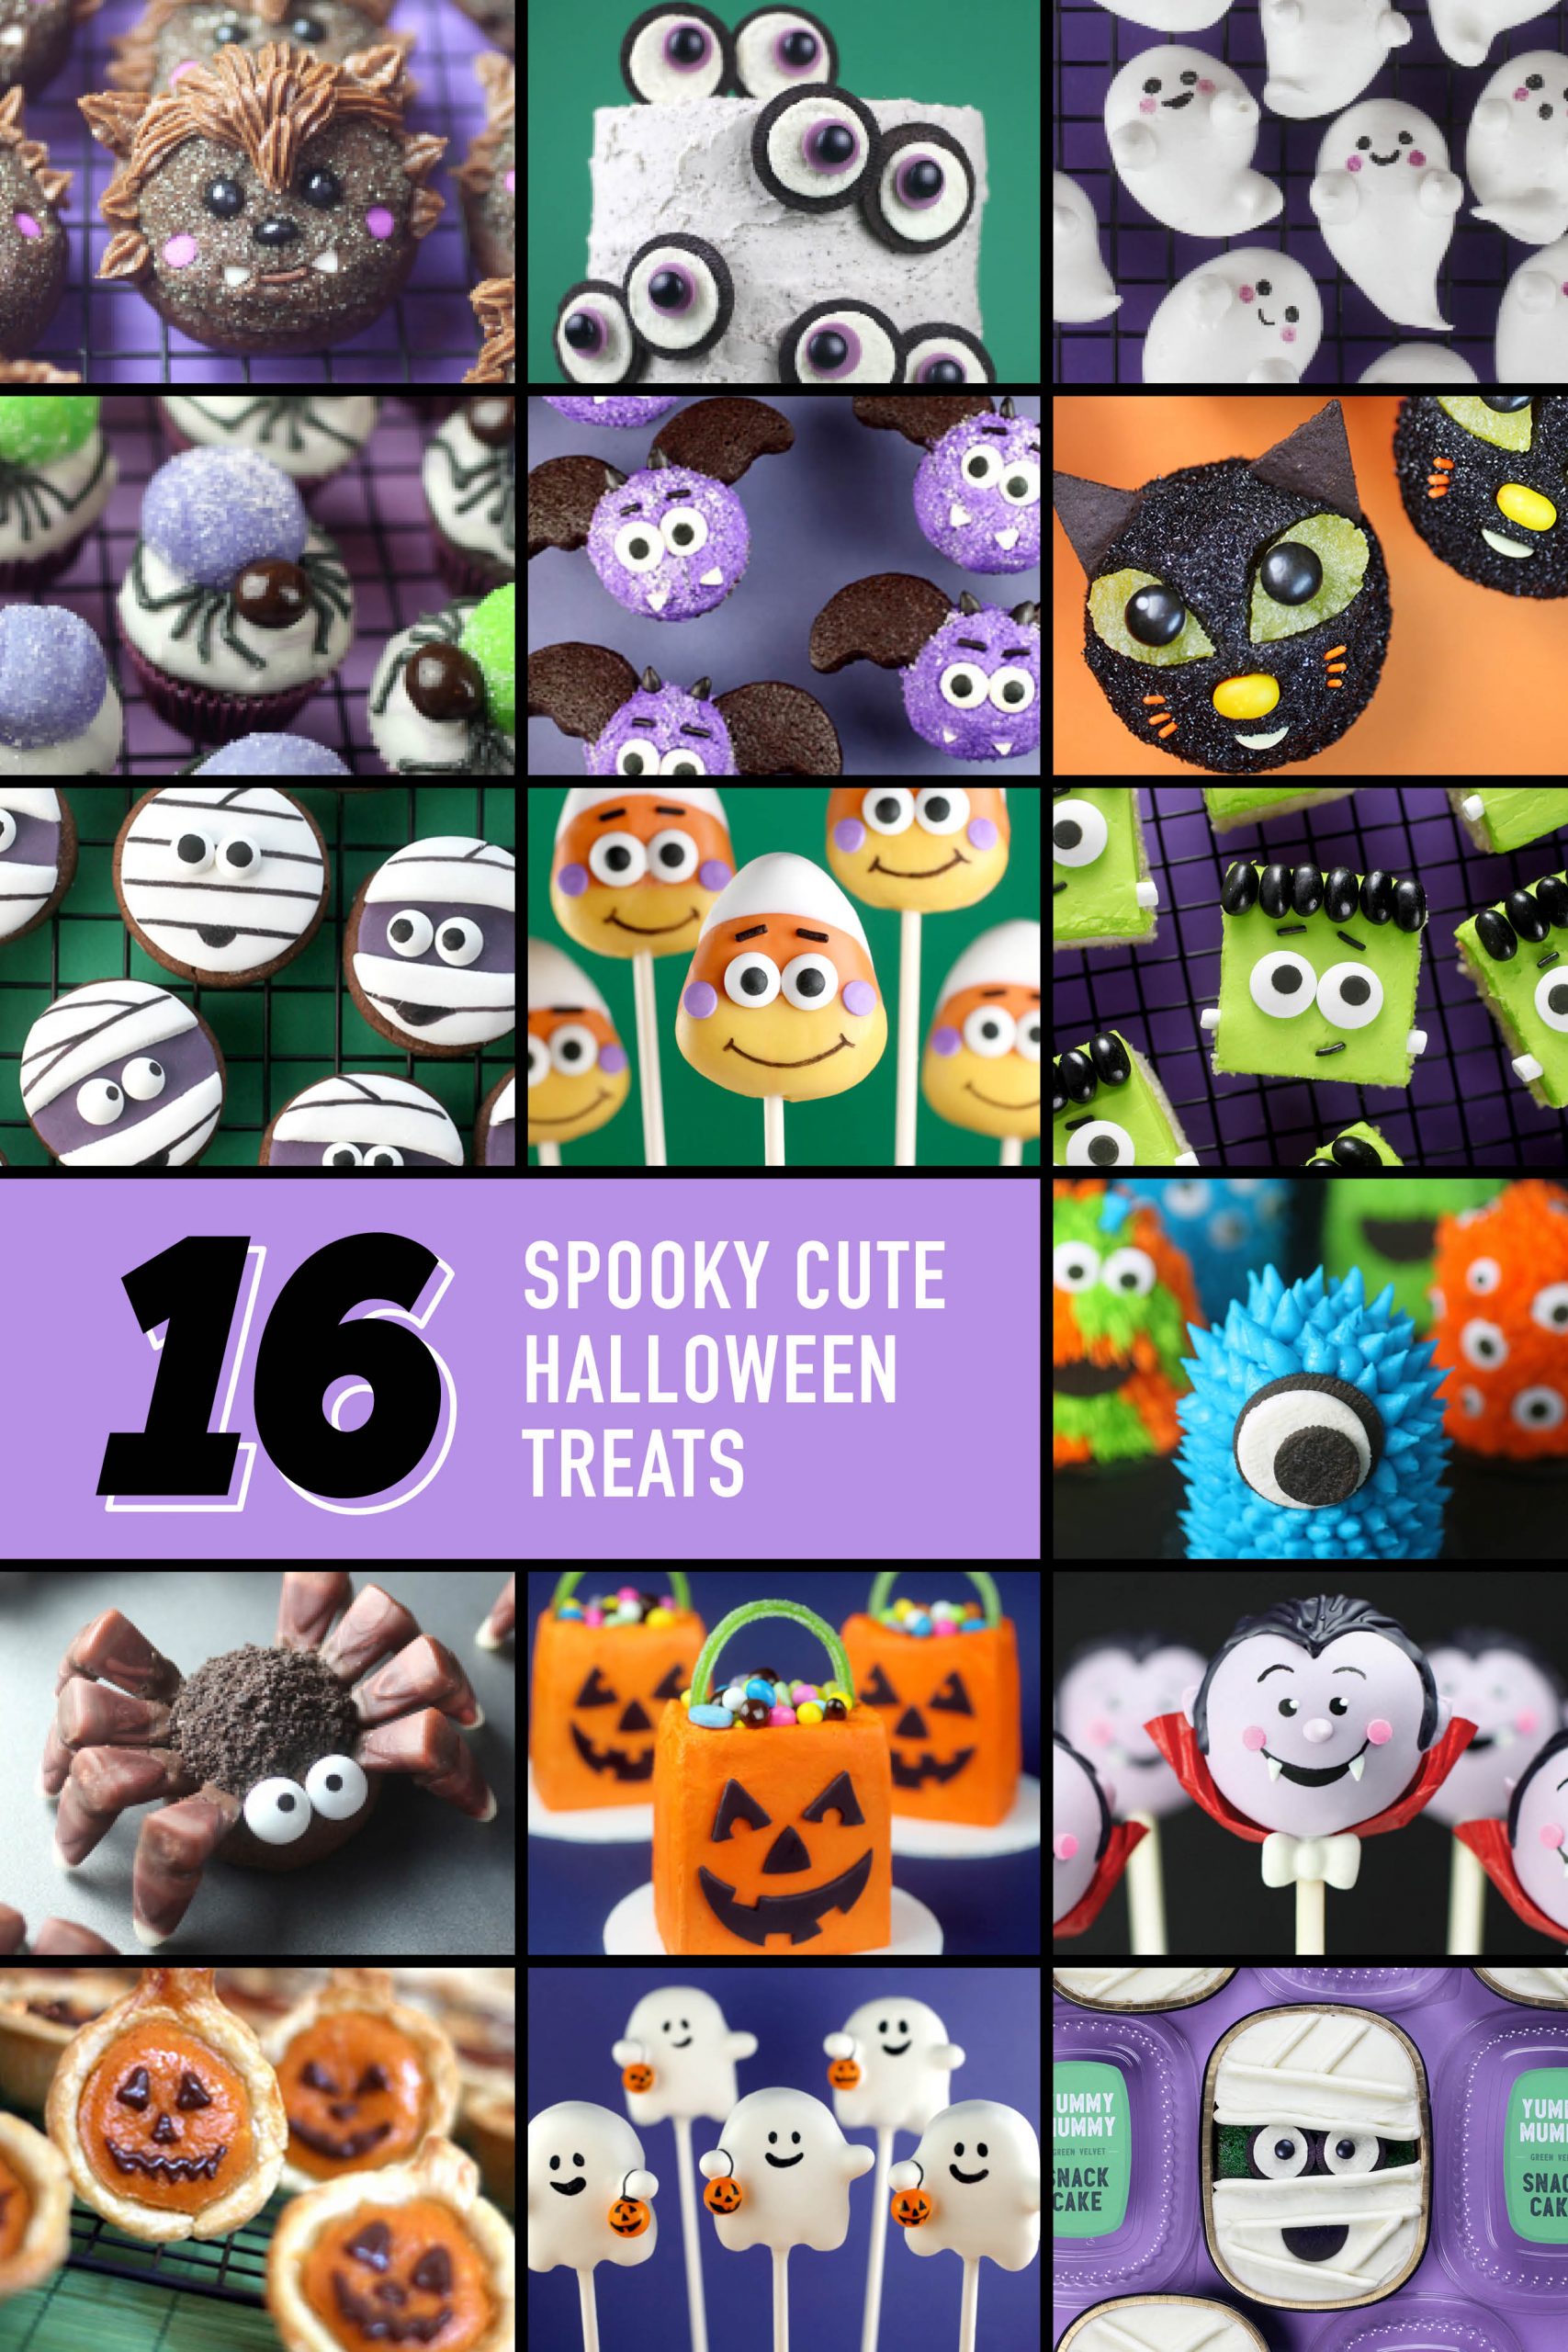 16 guloseimas assustadoras e fofas de Halloween